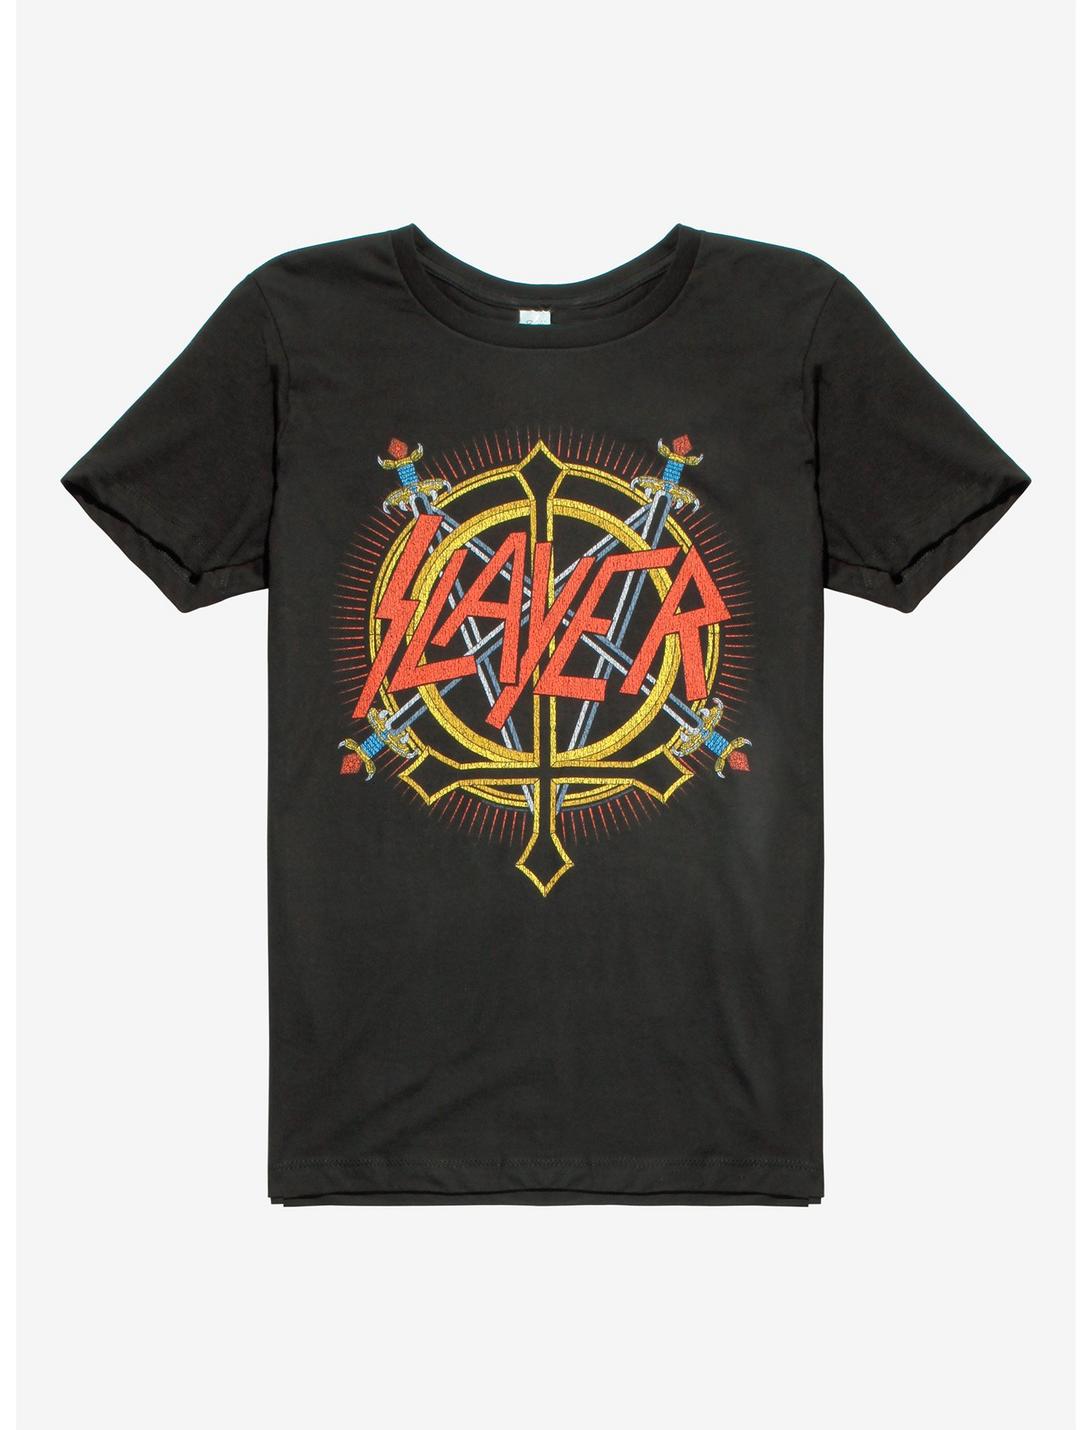 Slayer Sword Pentagram T-Shirt, BLACK, hi-res